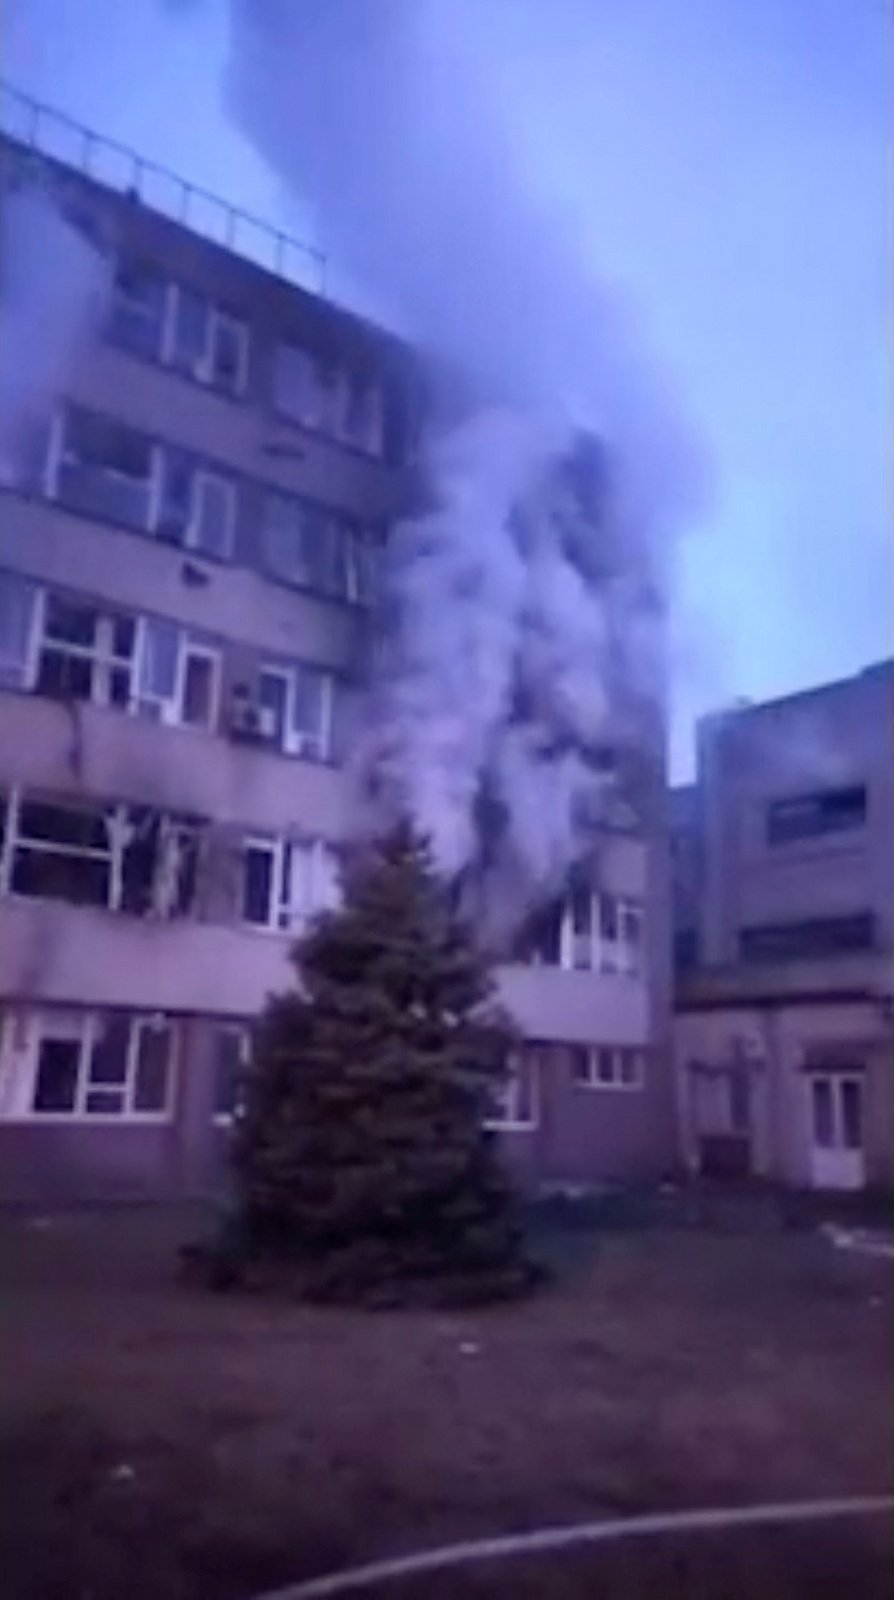 Nuclear power plant in Zaporizhzhia in fire and smoke  after a russian attack / Záporožská jaderná elektrárna po ruském útoku, (4.03.2022).